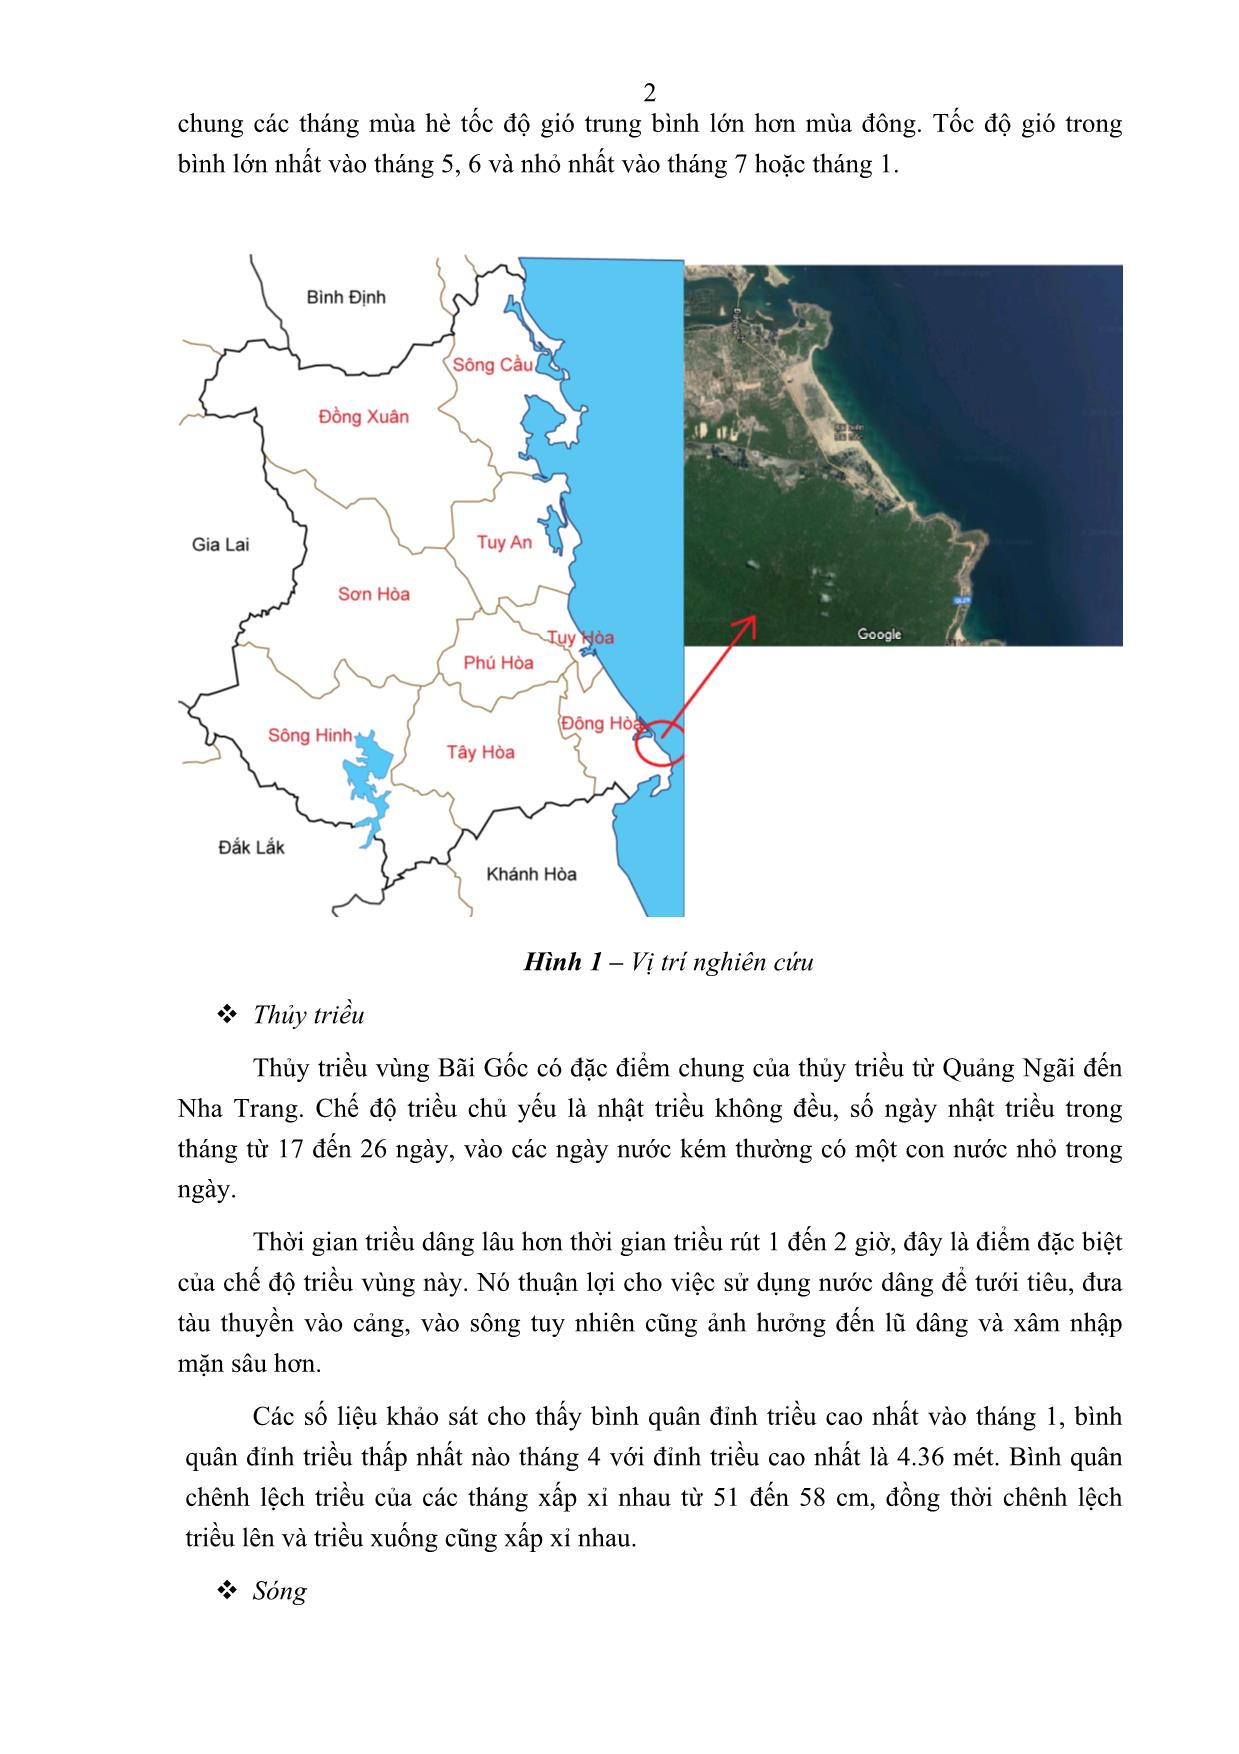 Nghiên cứu chế độ thủy động lực học khu vực bãi gốc - Phú Yên trang 2